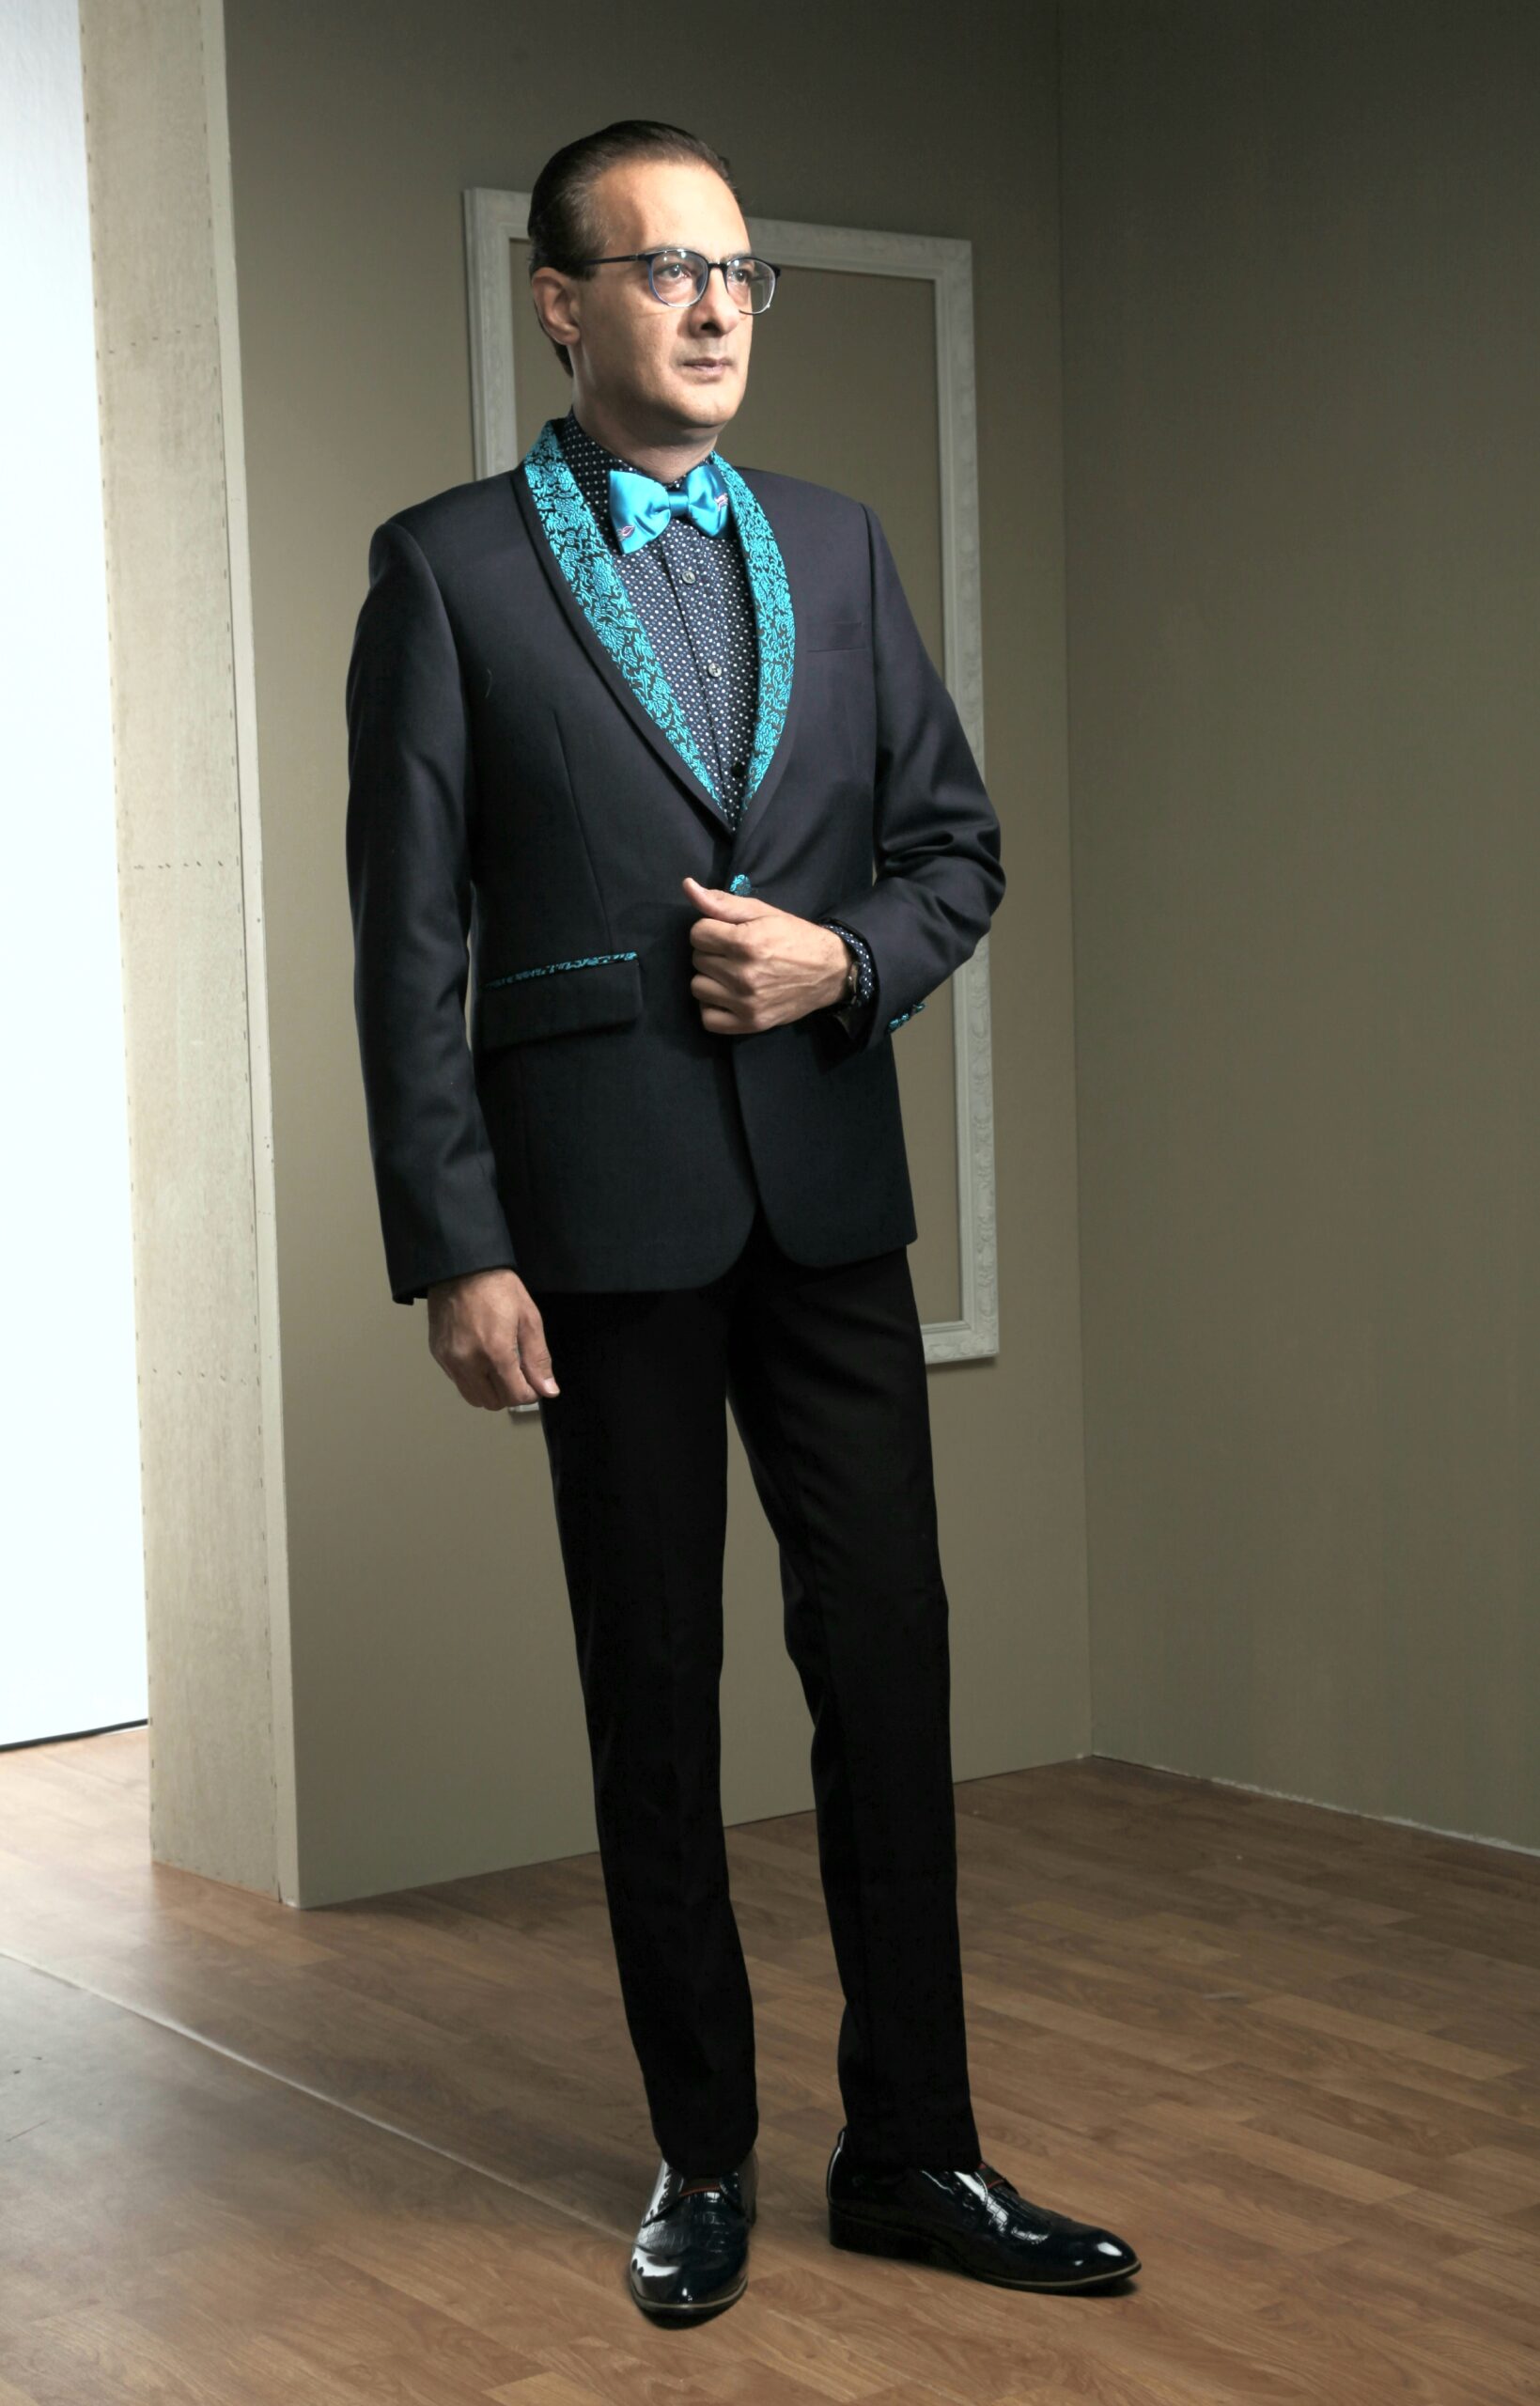 Mst 5002 01 Rent Rental Hire Tuxedo Suit Black Tie Suit Designer Suits Shop Tailor